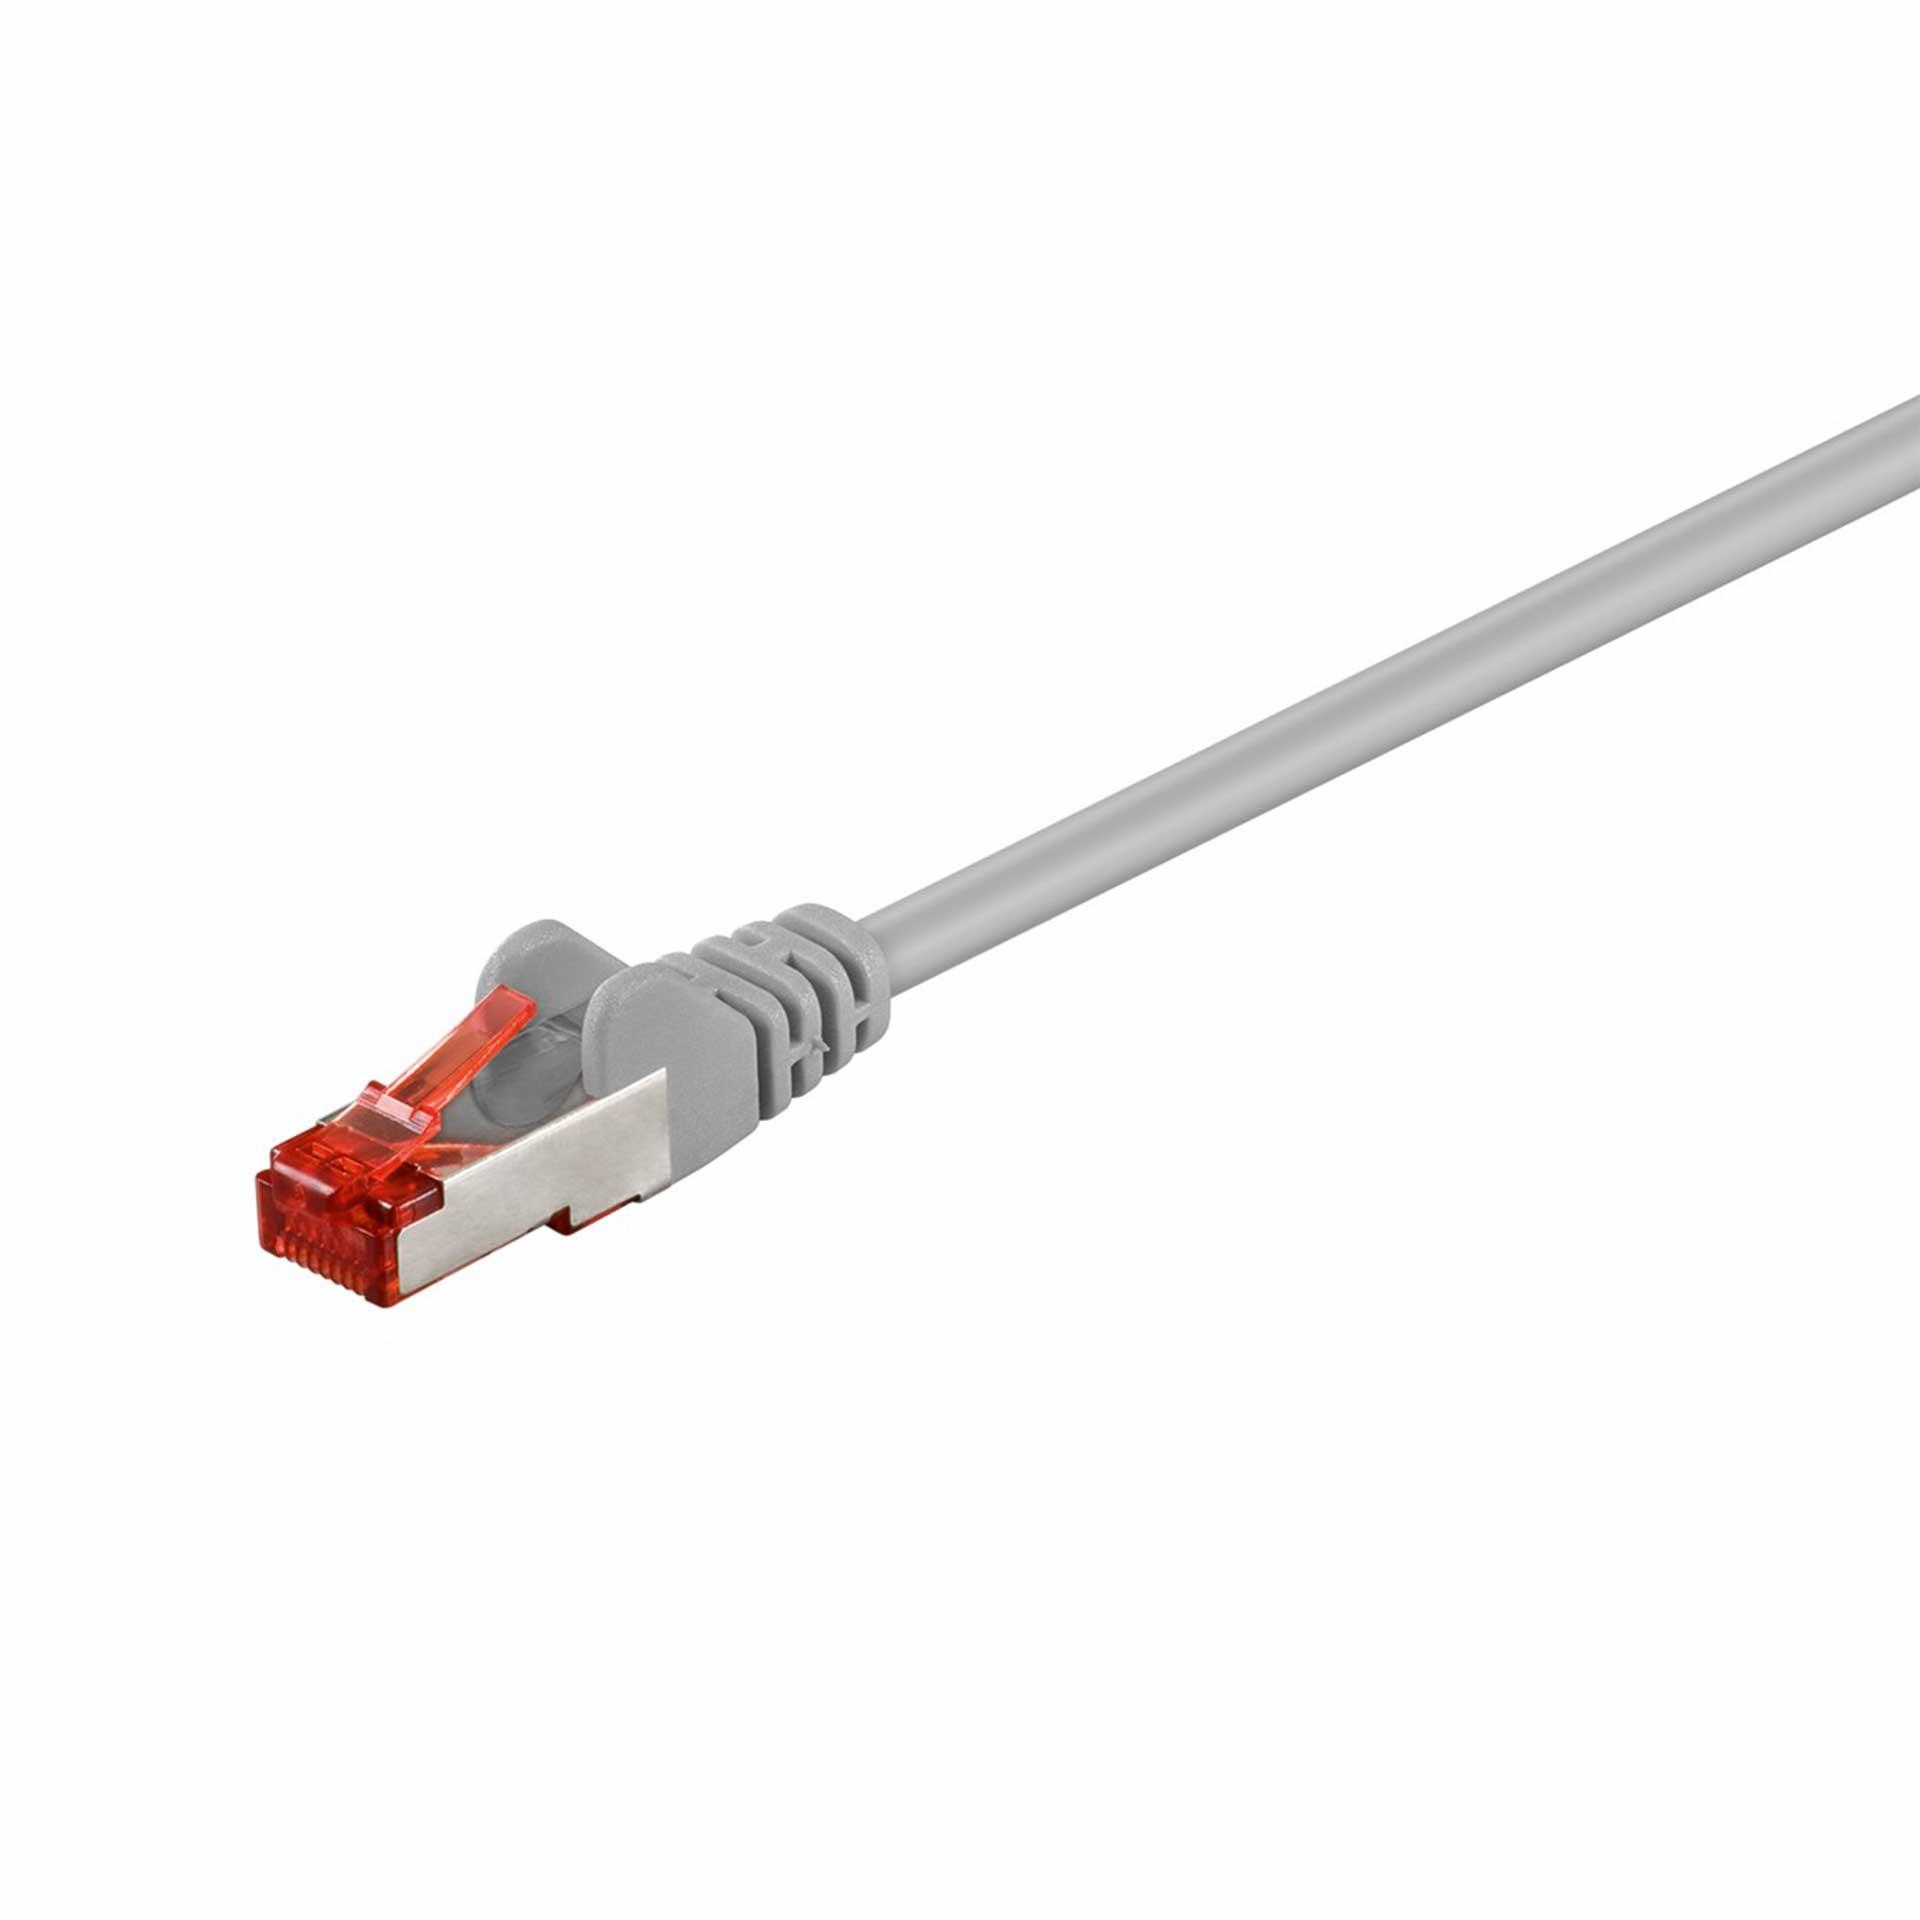 CAT 6 câble de raccordement S/FTP (PiMF), 1500mm, LSZH sans halogène, gris